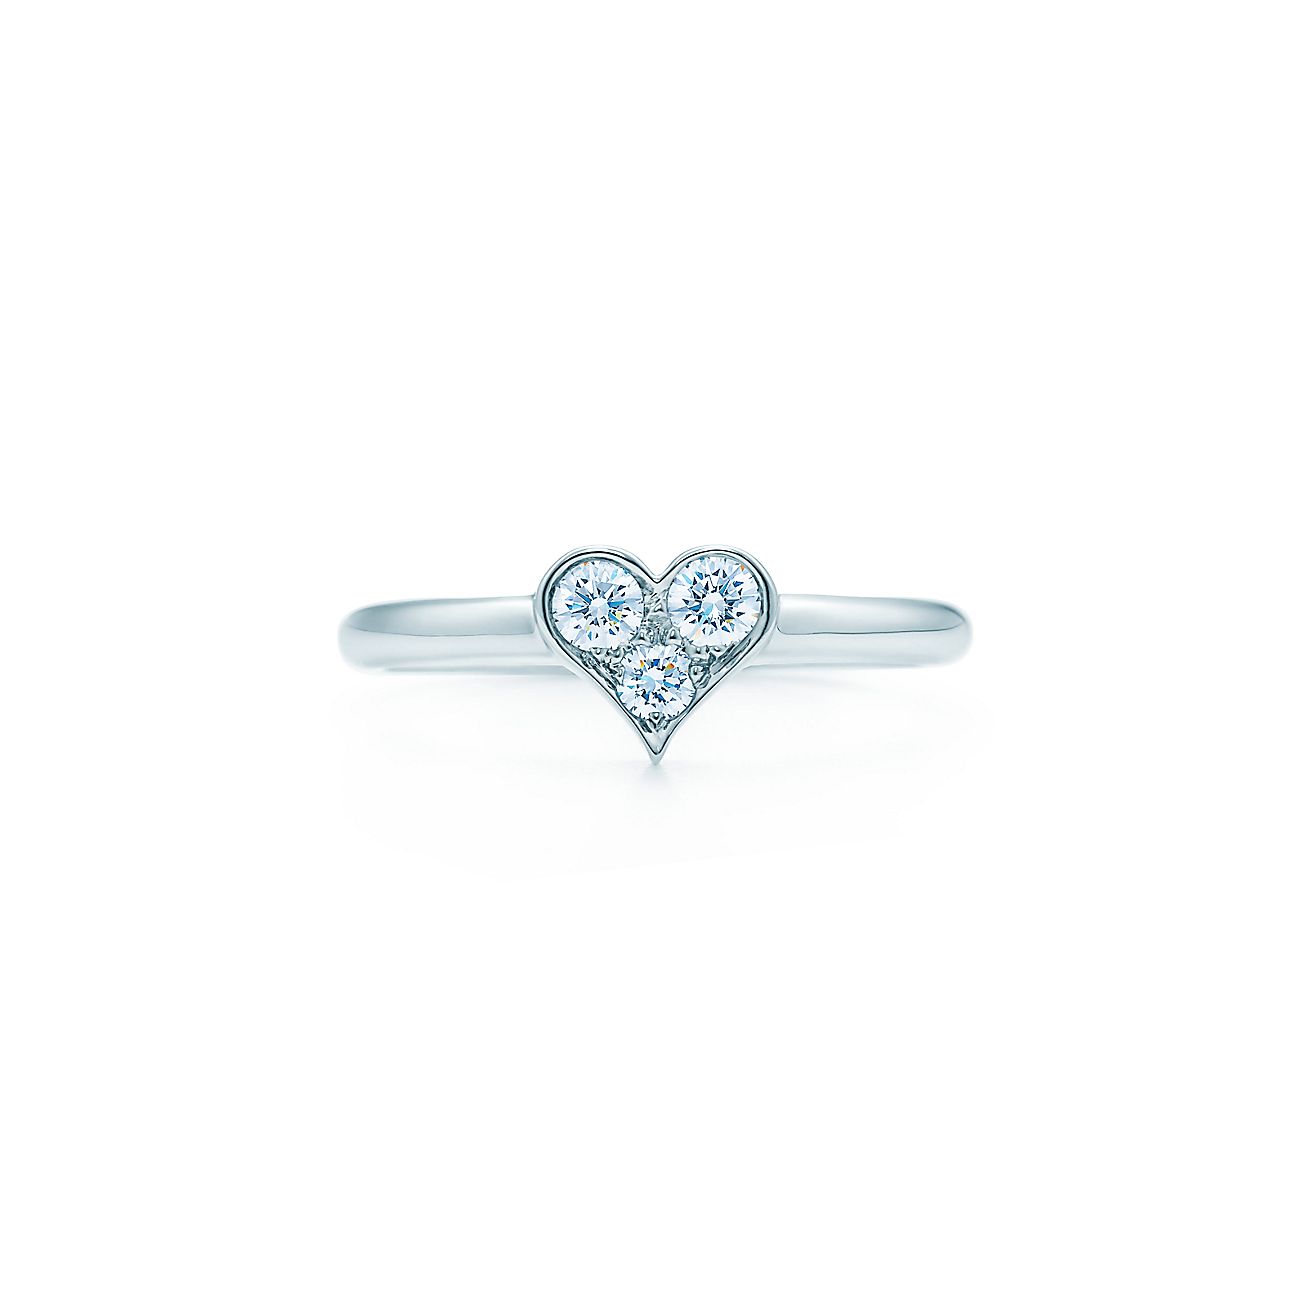 Tiffany heart diamond ring